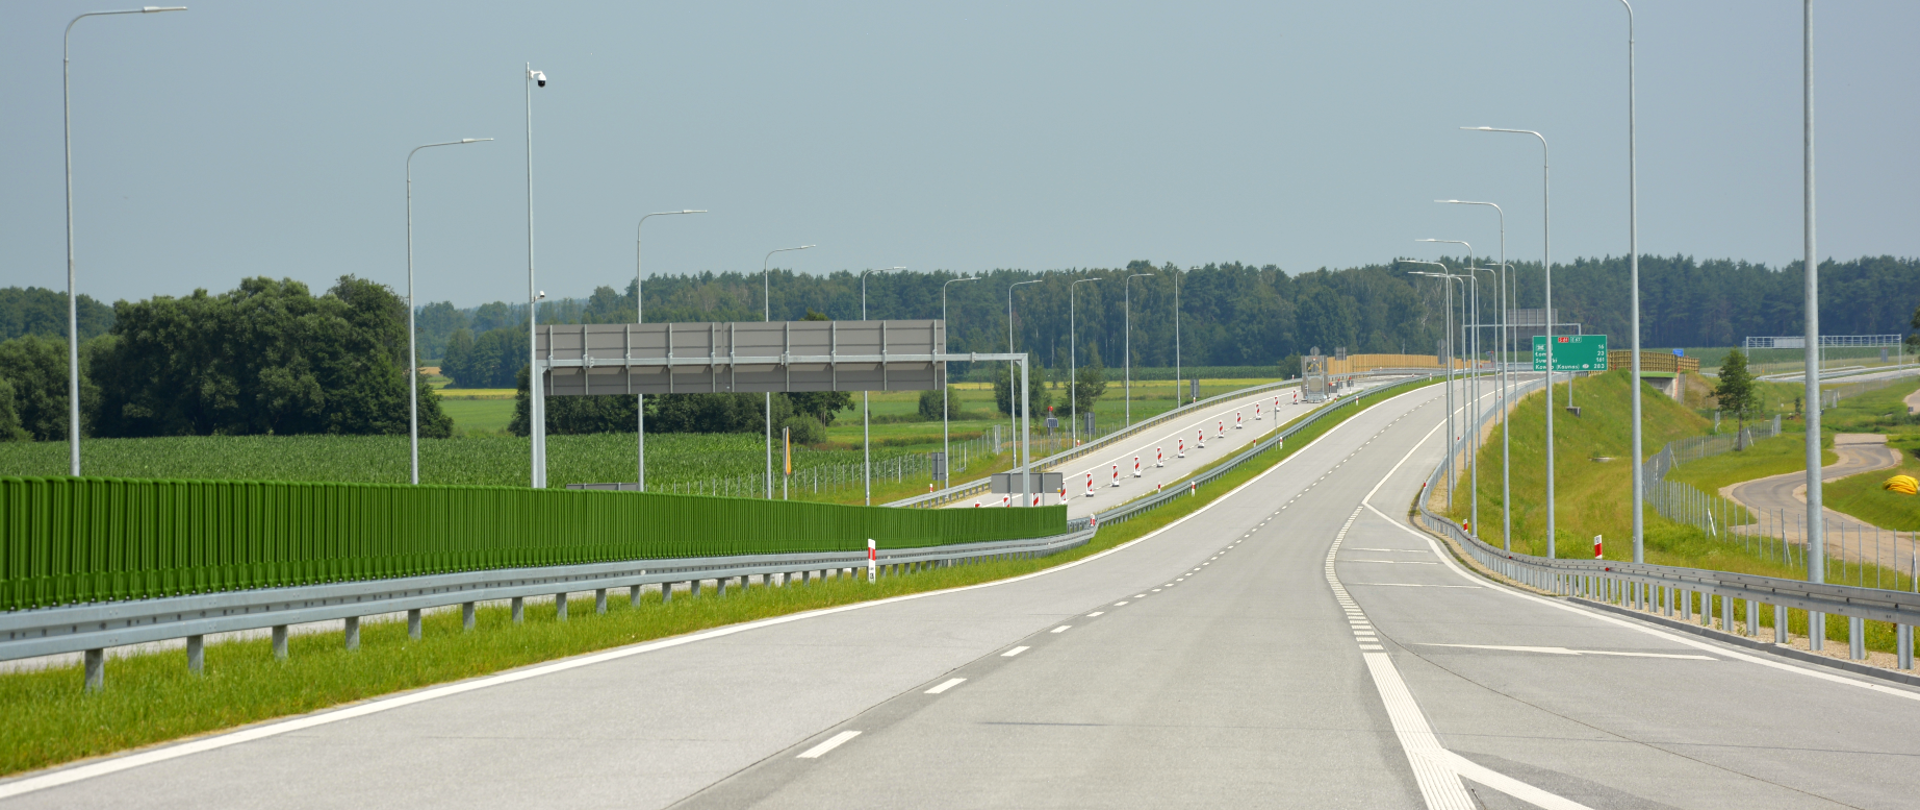 Kierowcy mogą już jeździć odcinkiem Śniadowo-Łomża Południe S61 Via Baltica